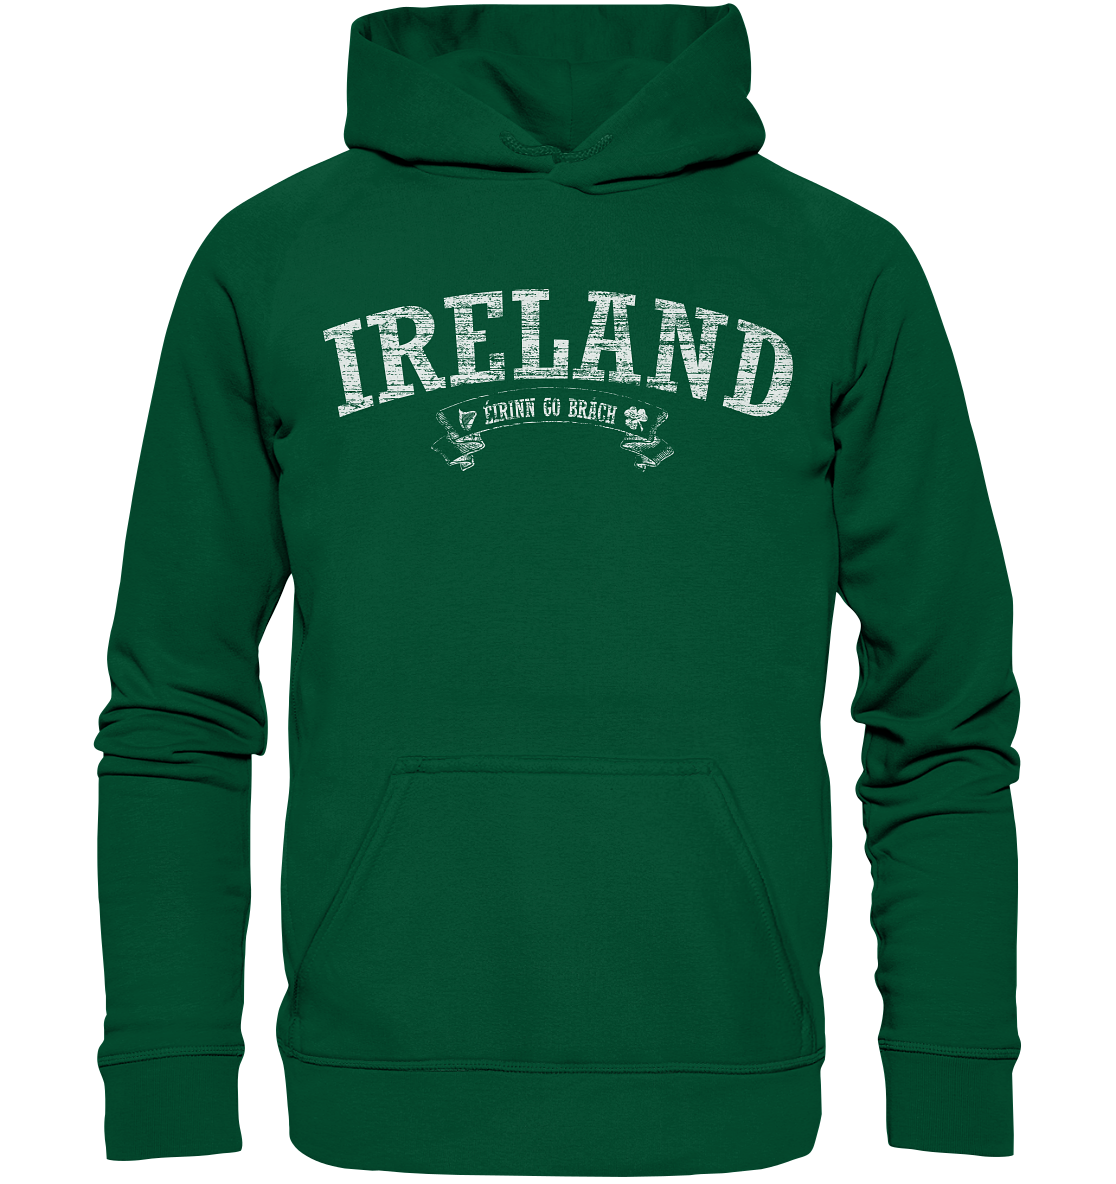 "Ireland - Éirinn go brách" - Basic Unisex Hoodie